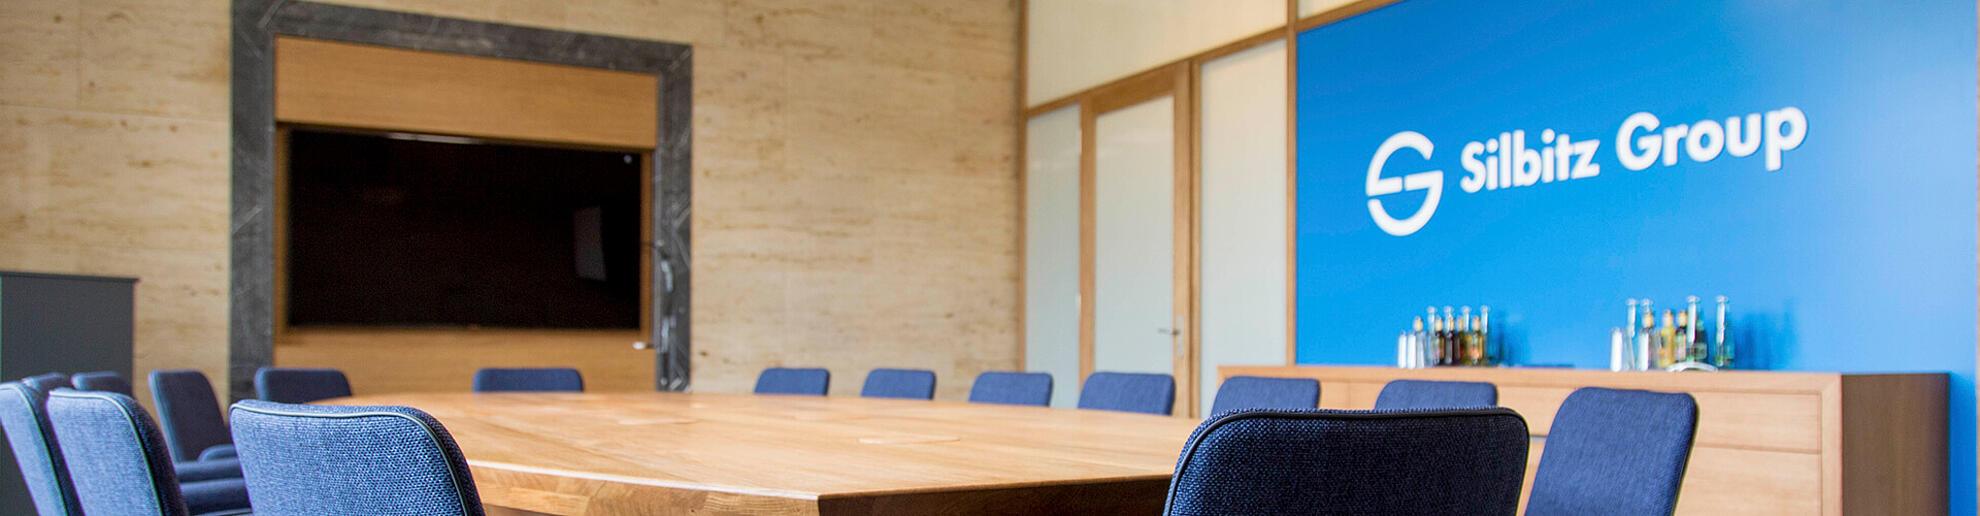 Ein Meeting Room mit großem, rundem Tisch aus Holz. Dahinter an einer blauen Wand ist das Silbitz Group Logo zu sehen.